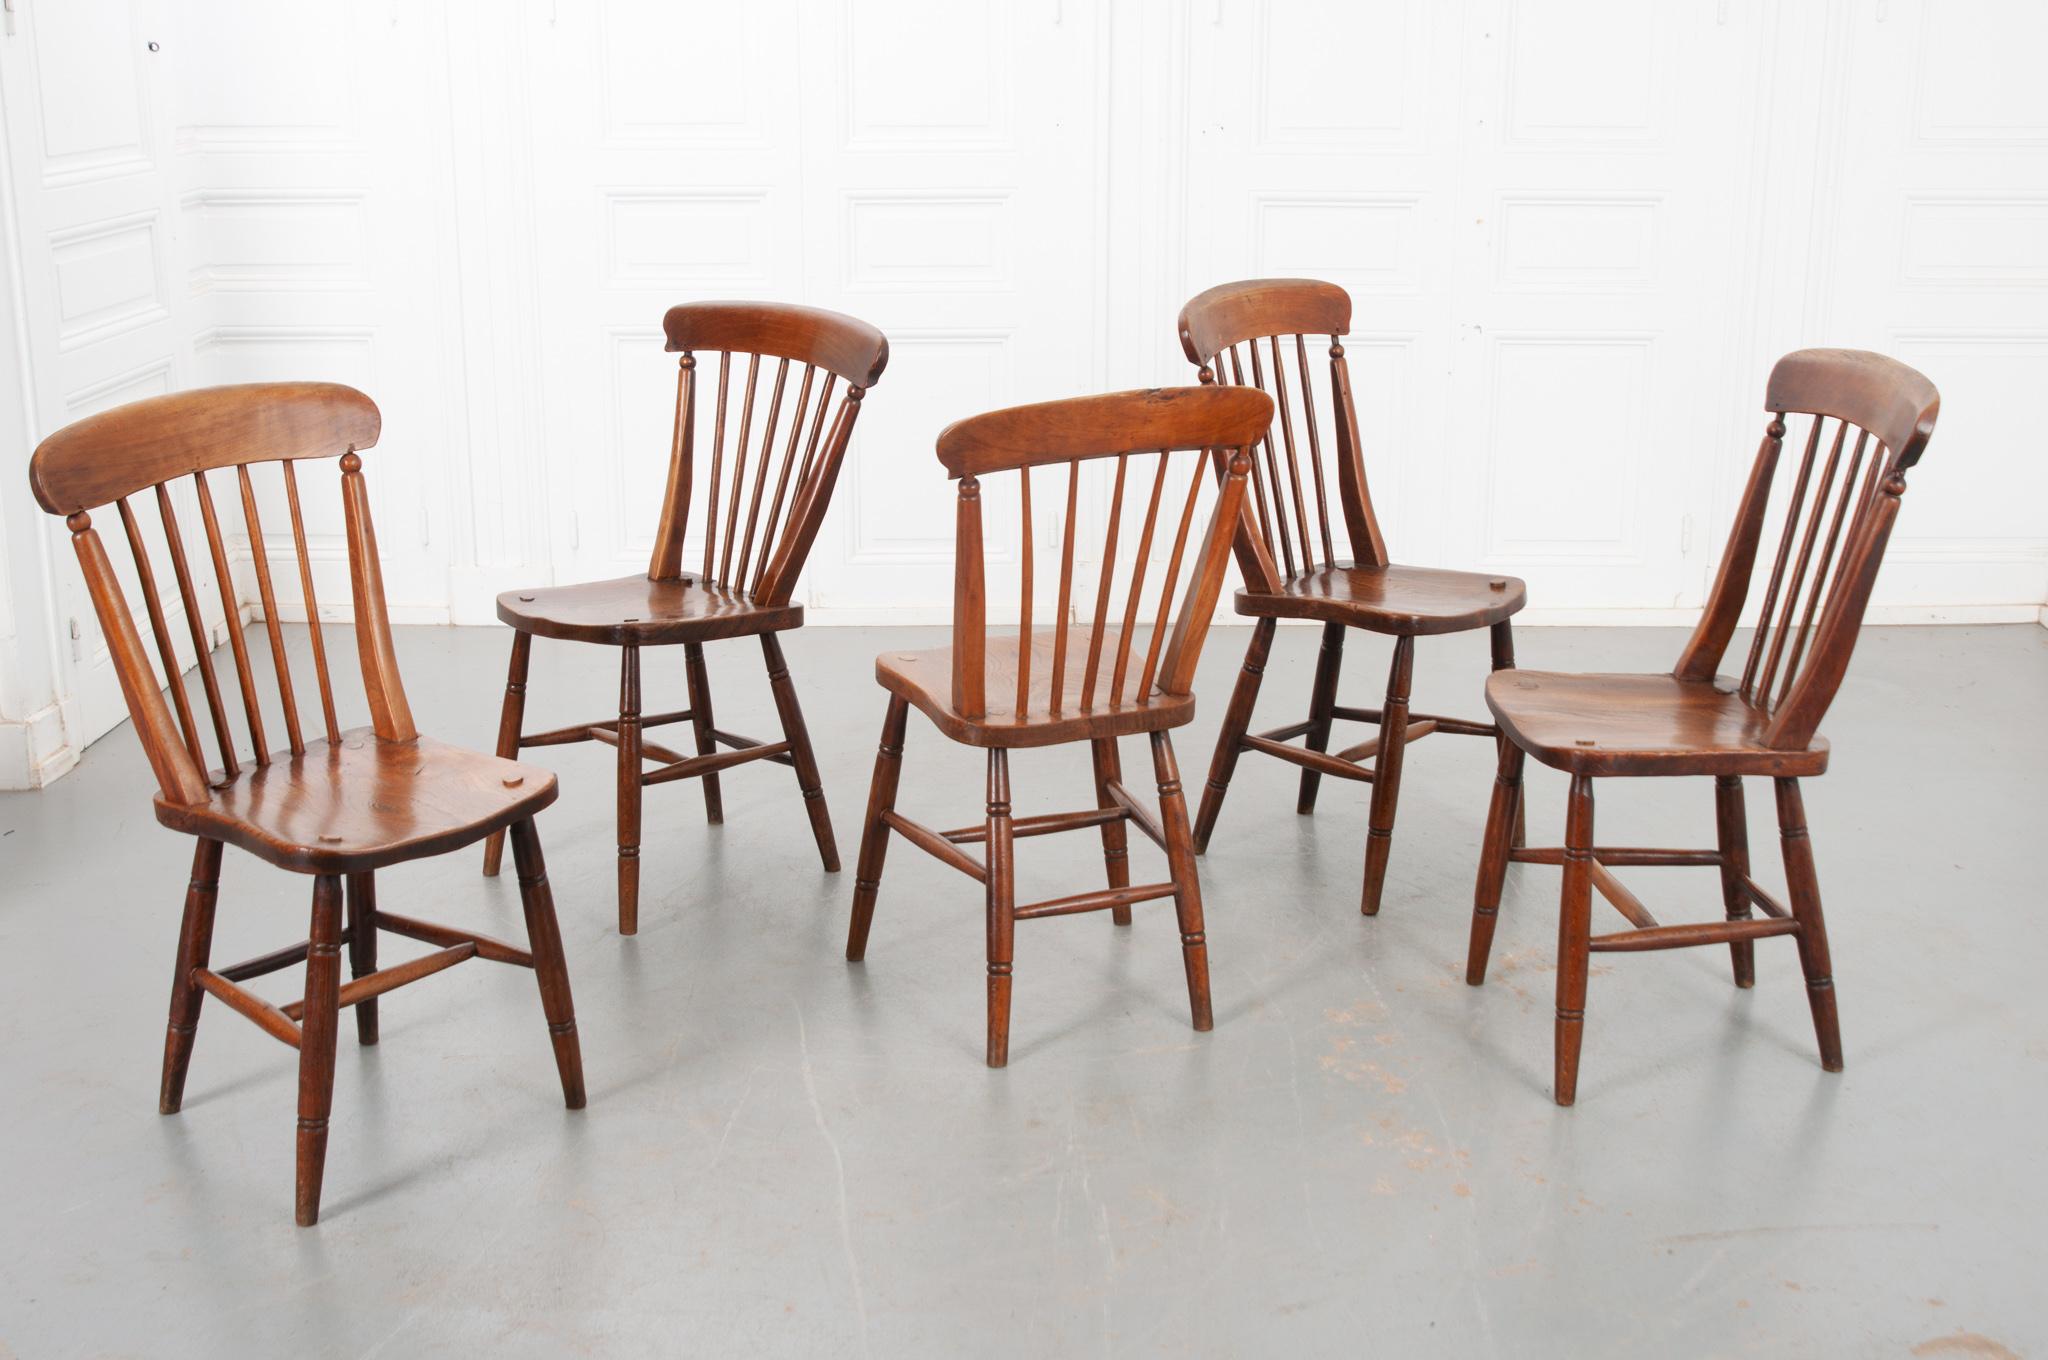 Cet ensemble classique de cinq chaises de salle à manger a été fabriqué en Angleterre, vers 1860. Nettoyé et poli avec de la pâte de cire française. Le chêne massif merveilleusement patiné s'avère incroyablement robuste après près de 200 ans, ce qui